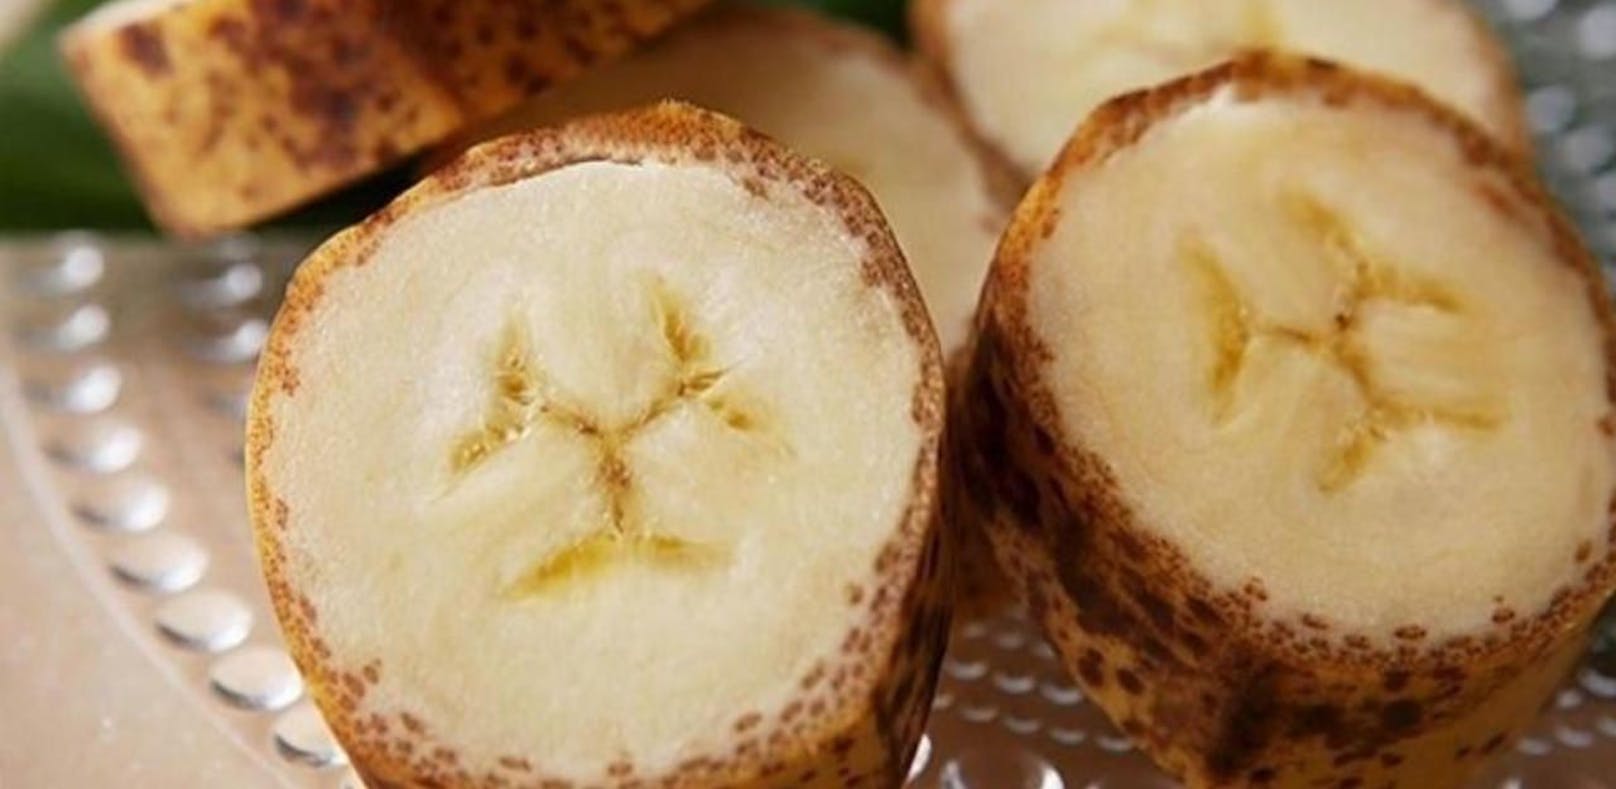 Mongee-Bananen kann man mit der Schale essen